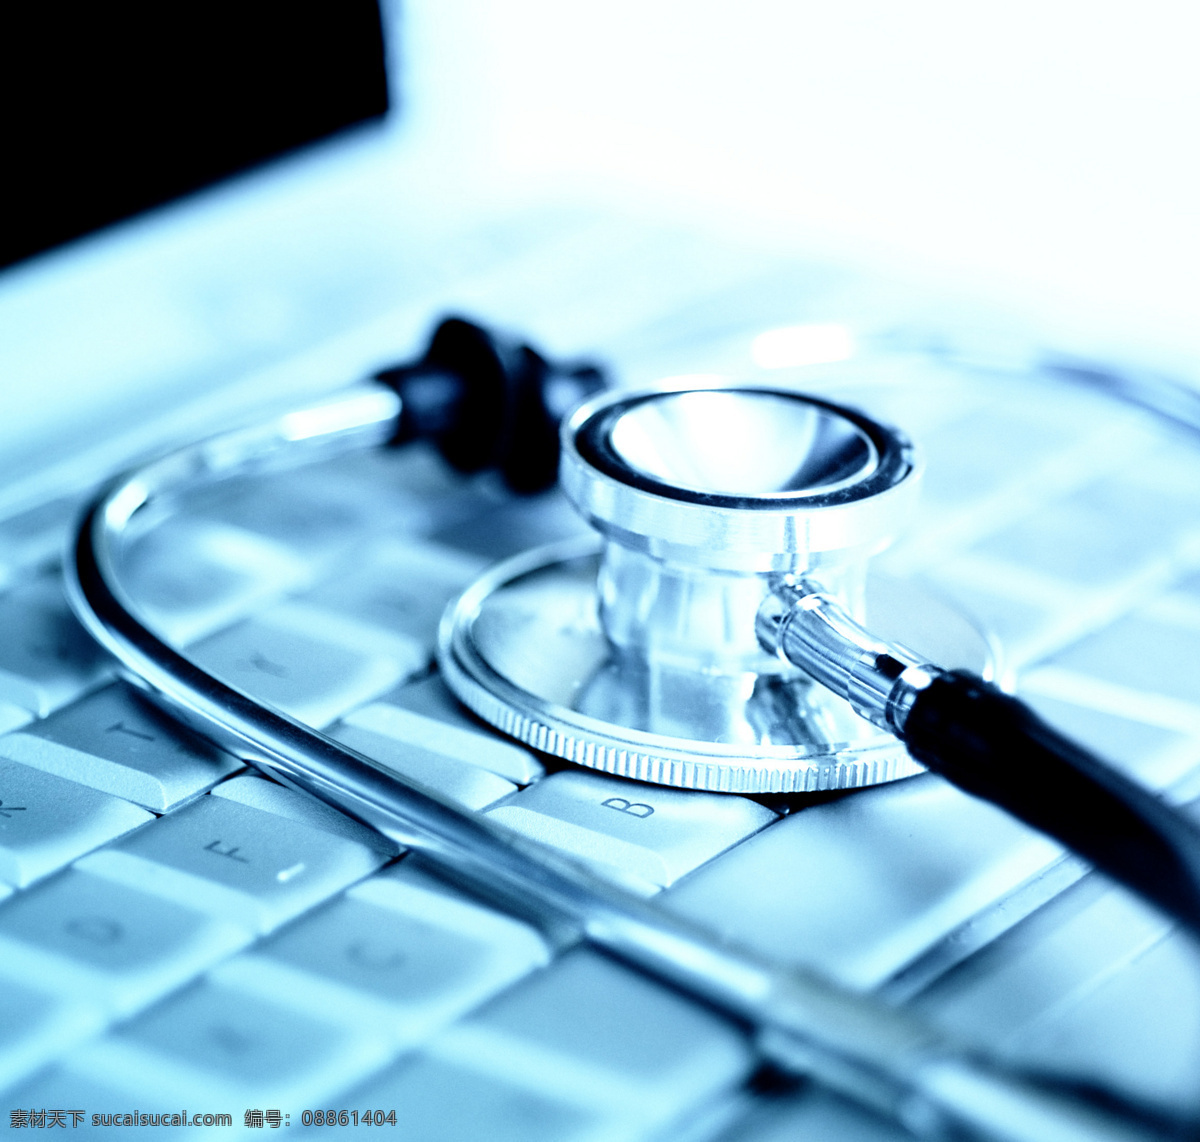 在线诊断 诊治 诊断 听诊器 治疗 医院素材 键盘 仪器 电脑数码 生活百科 白色